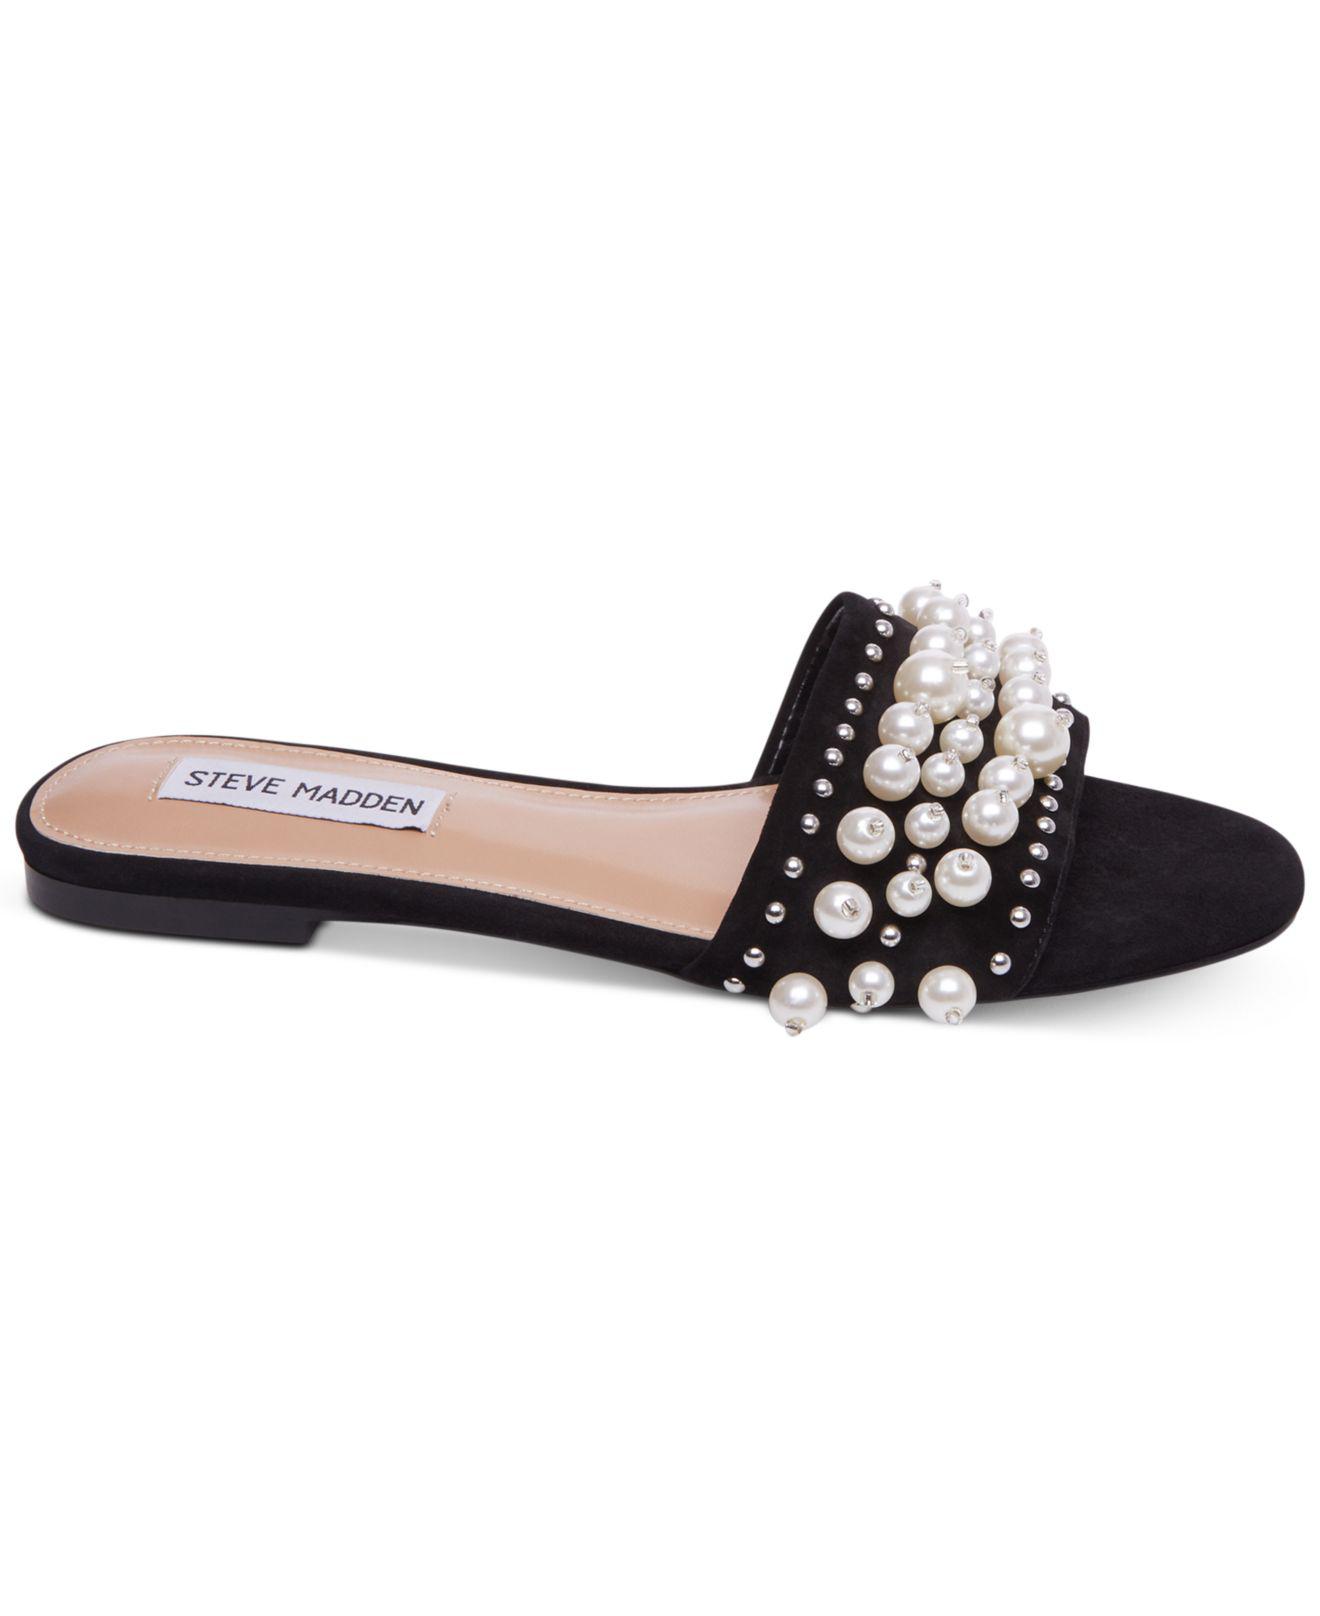 Buy > steve madden pearl sandals > in stock